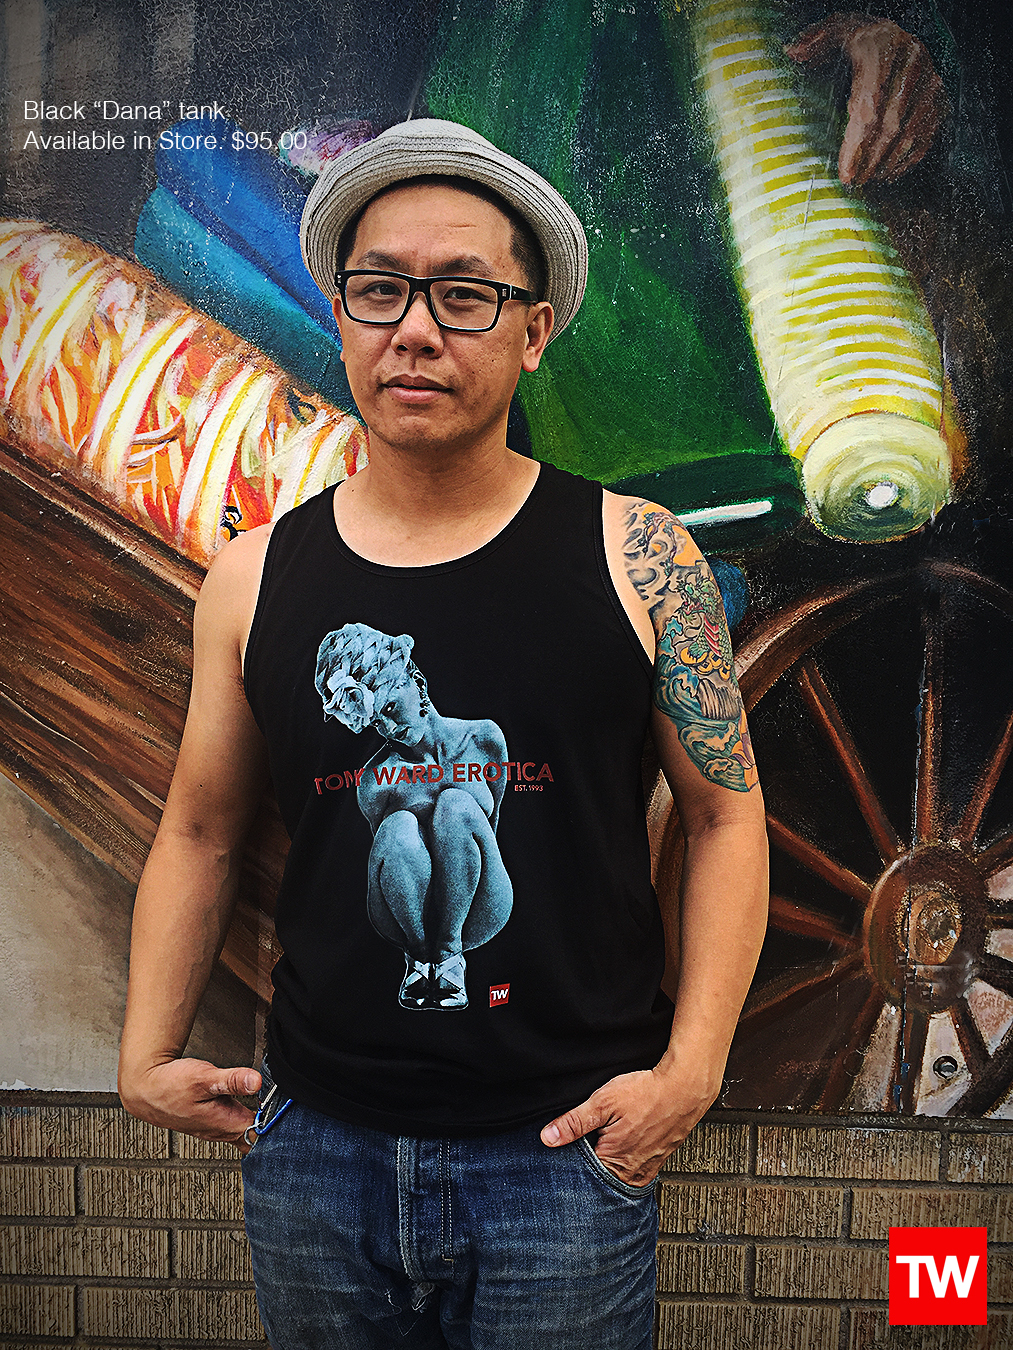 Tony_Ward_Studio_e_commerce_store_t-shirts_black_dana_tank_sale_model_Doug_Wong